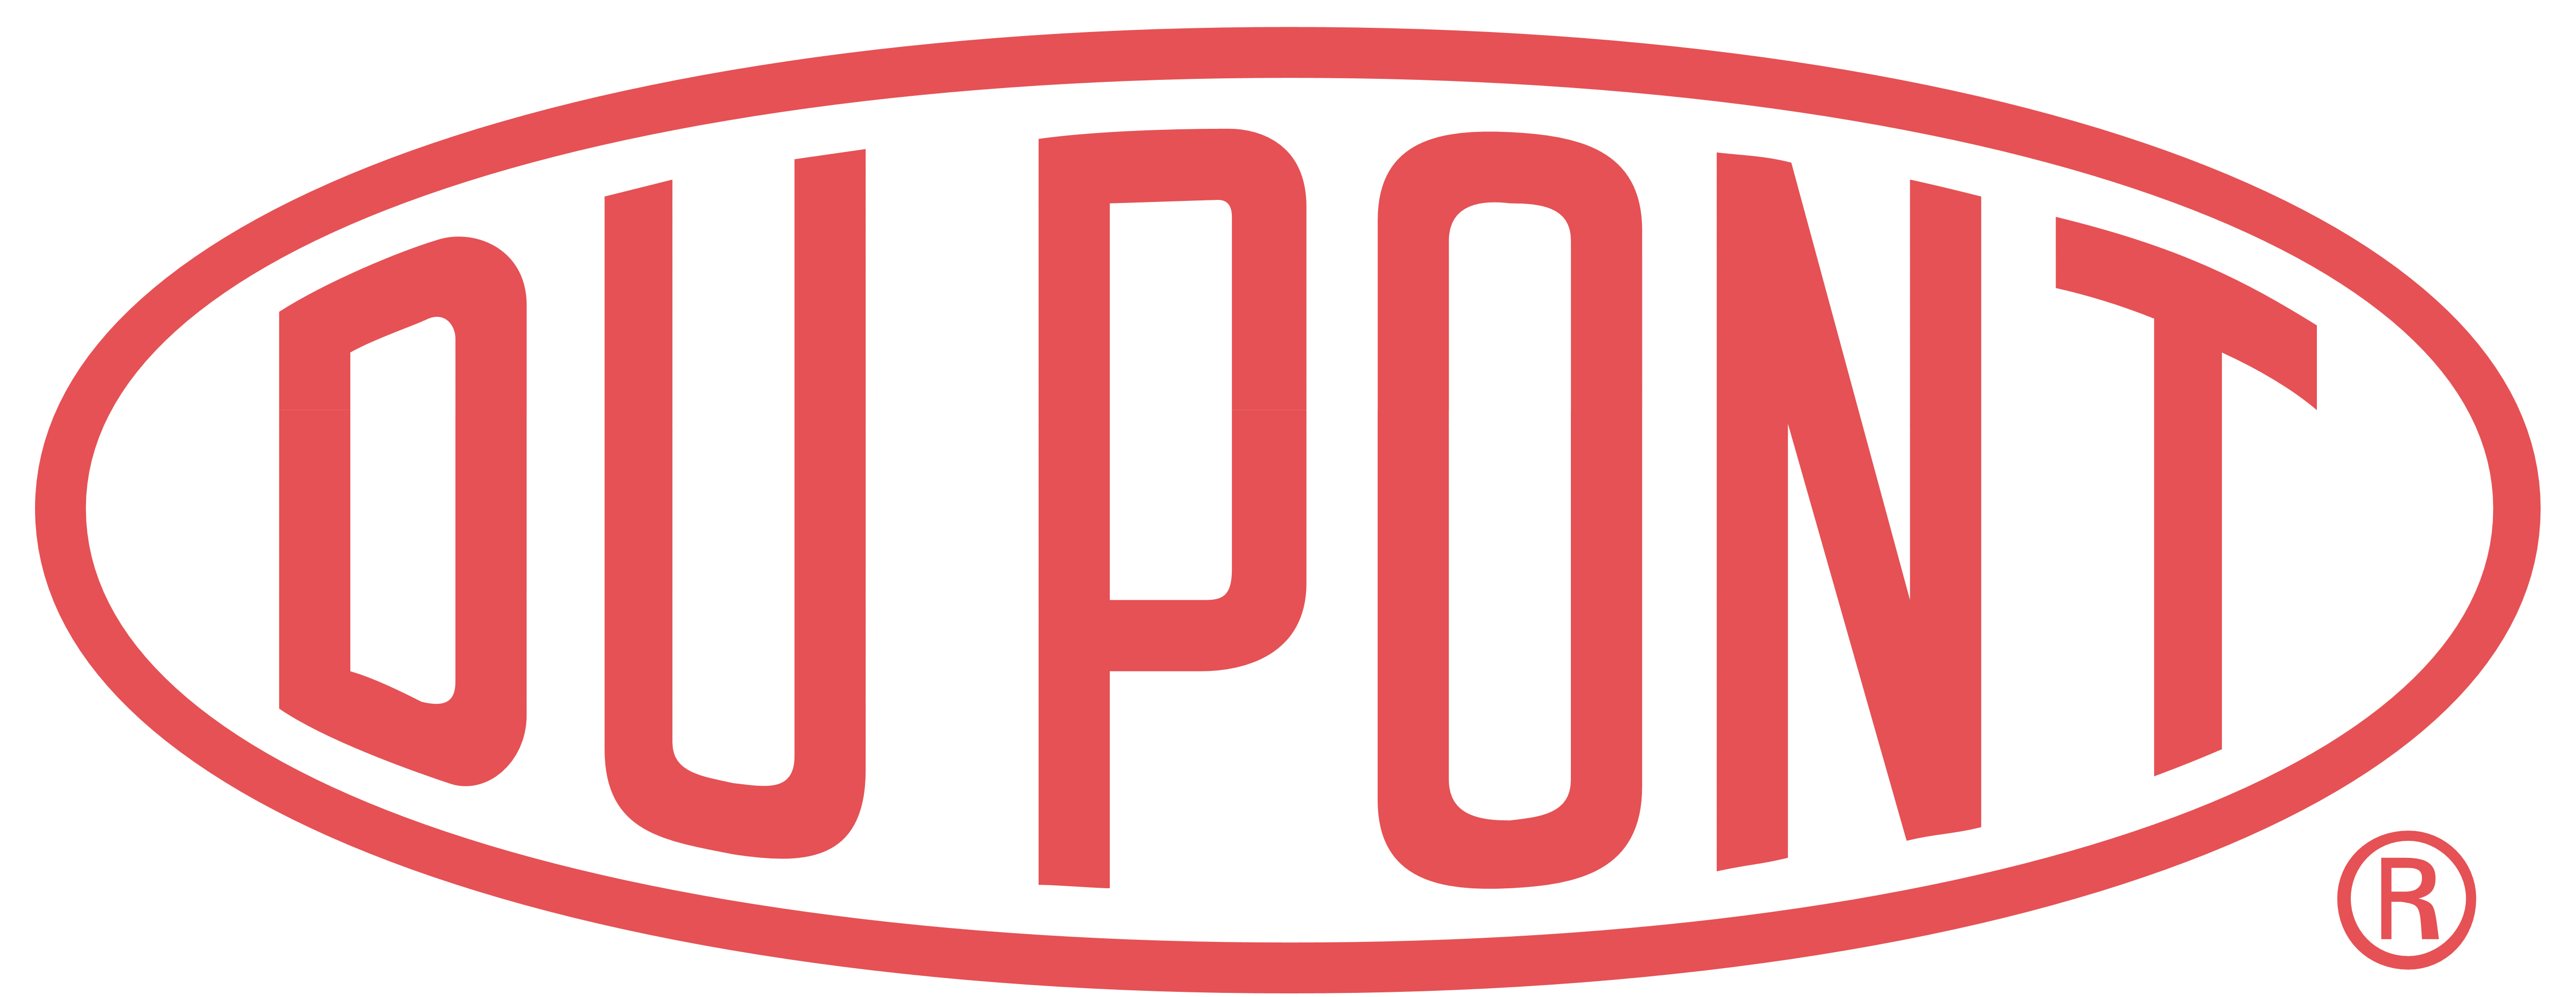 DuPont - Logos Download